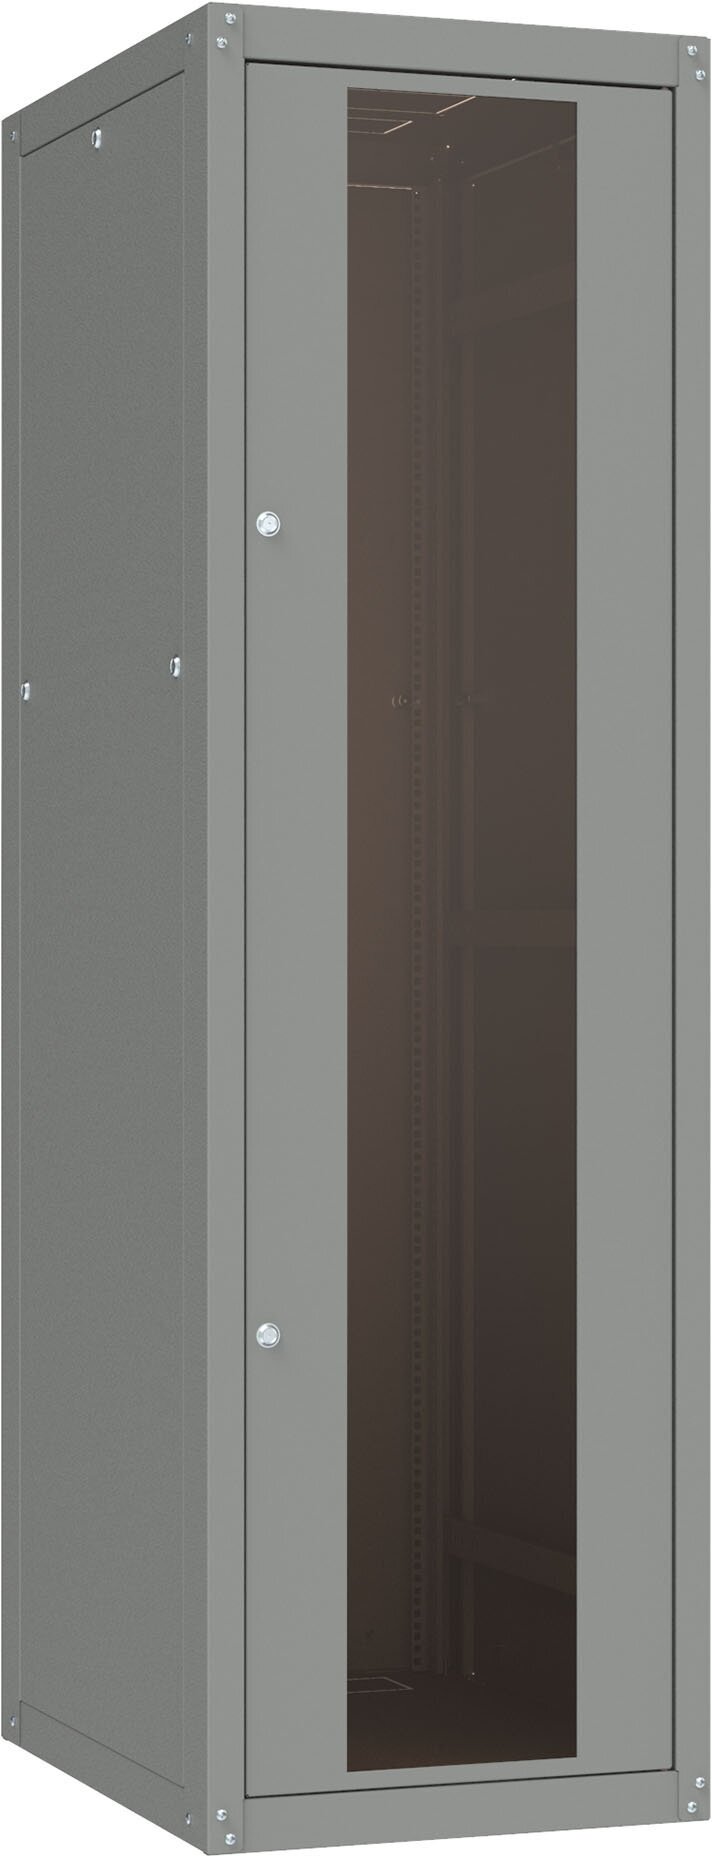 Шкаф коммутационный NT Basic.2 24-810. GF13. SD2. BF24 G (565727) напольный 24U 800x1000мм пер. дв. стекл задн. дв. спл. стал